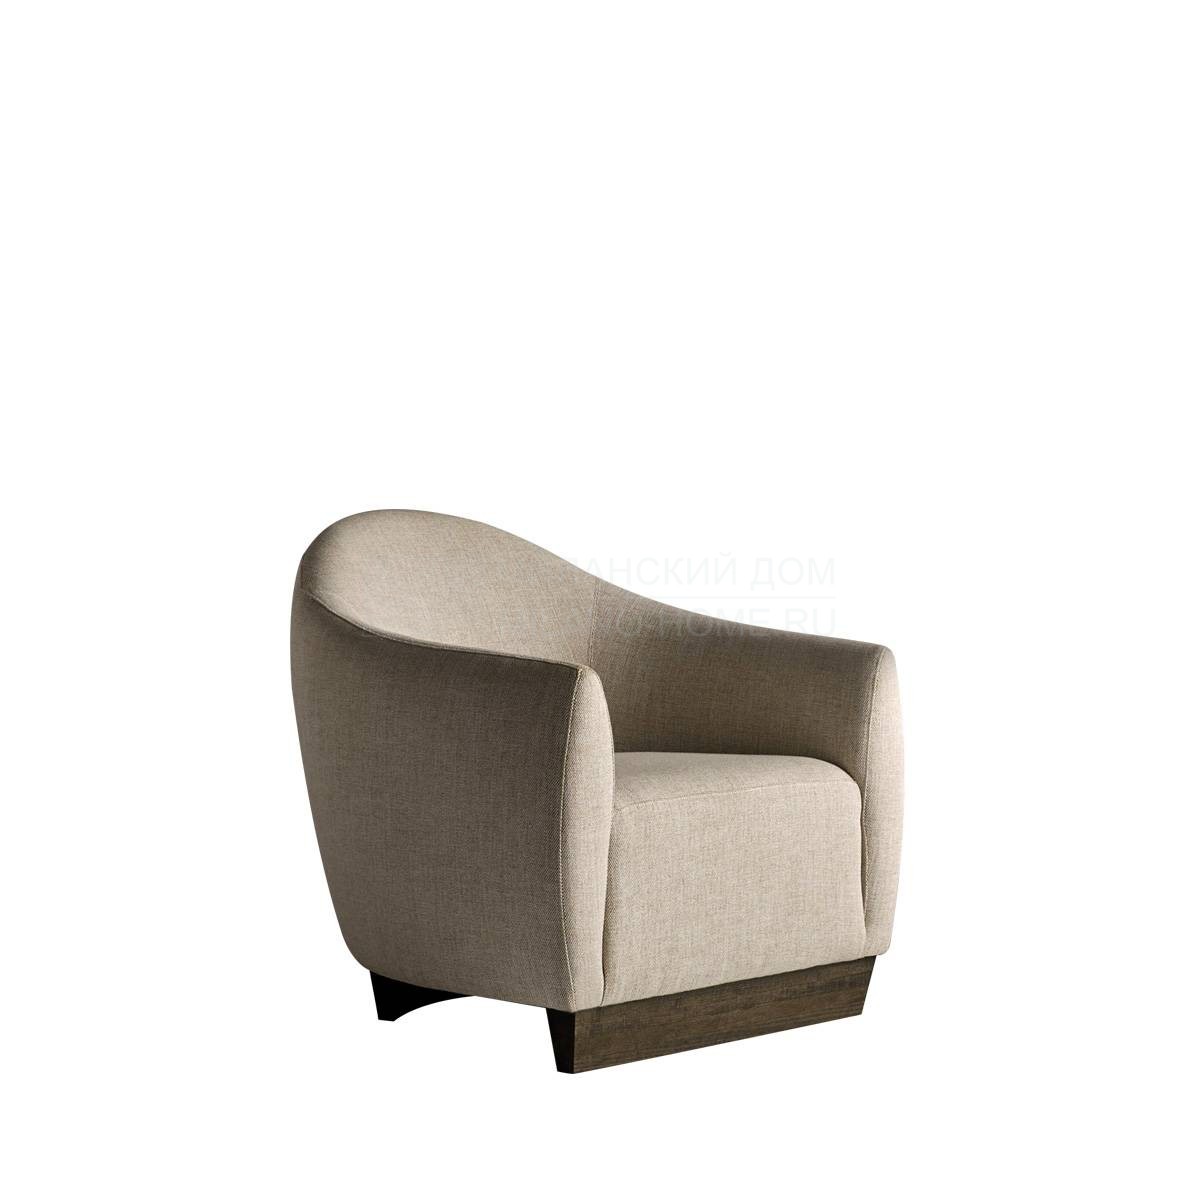 Круглое кресло Tupe armchair из Испании фабрики COLECCION ALEXANDRA